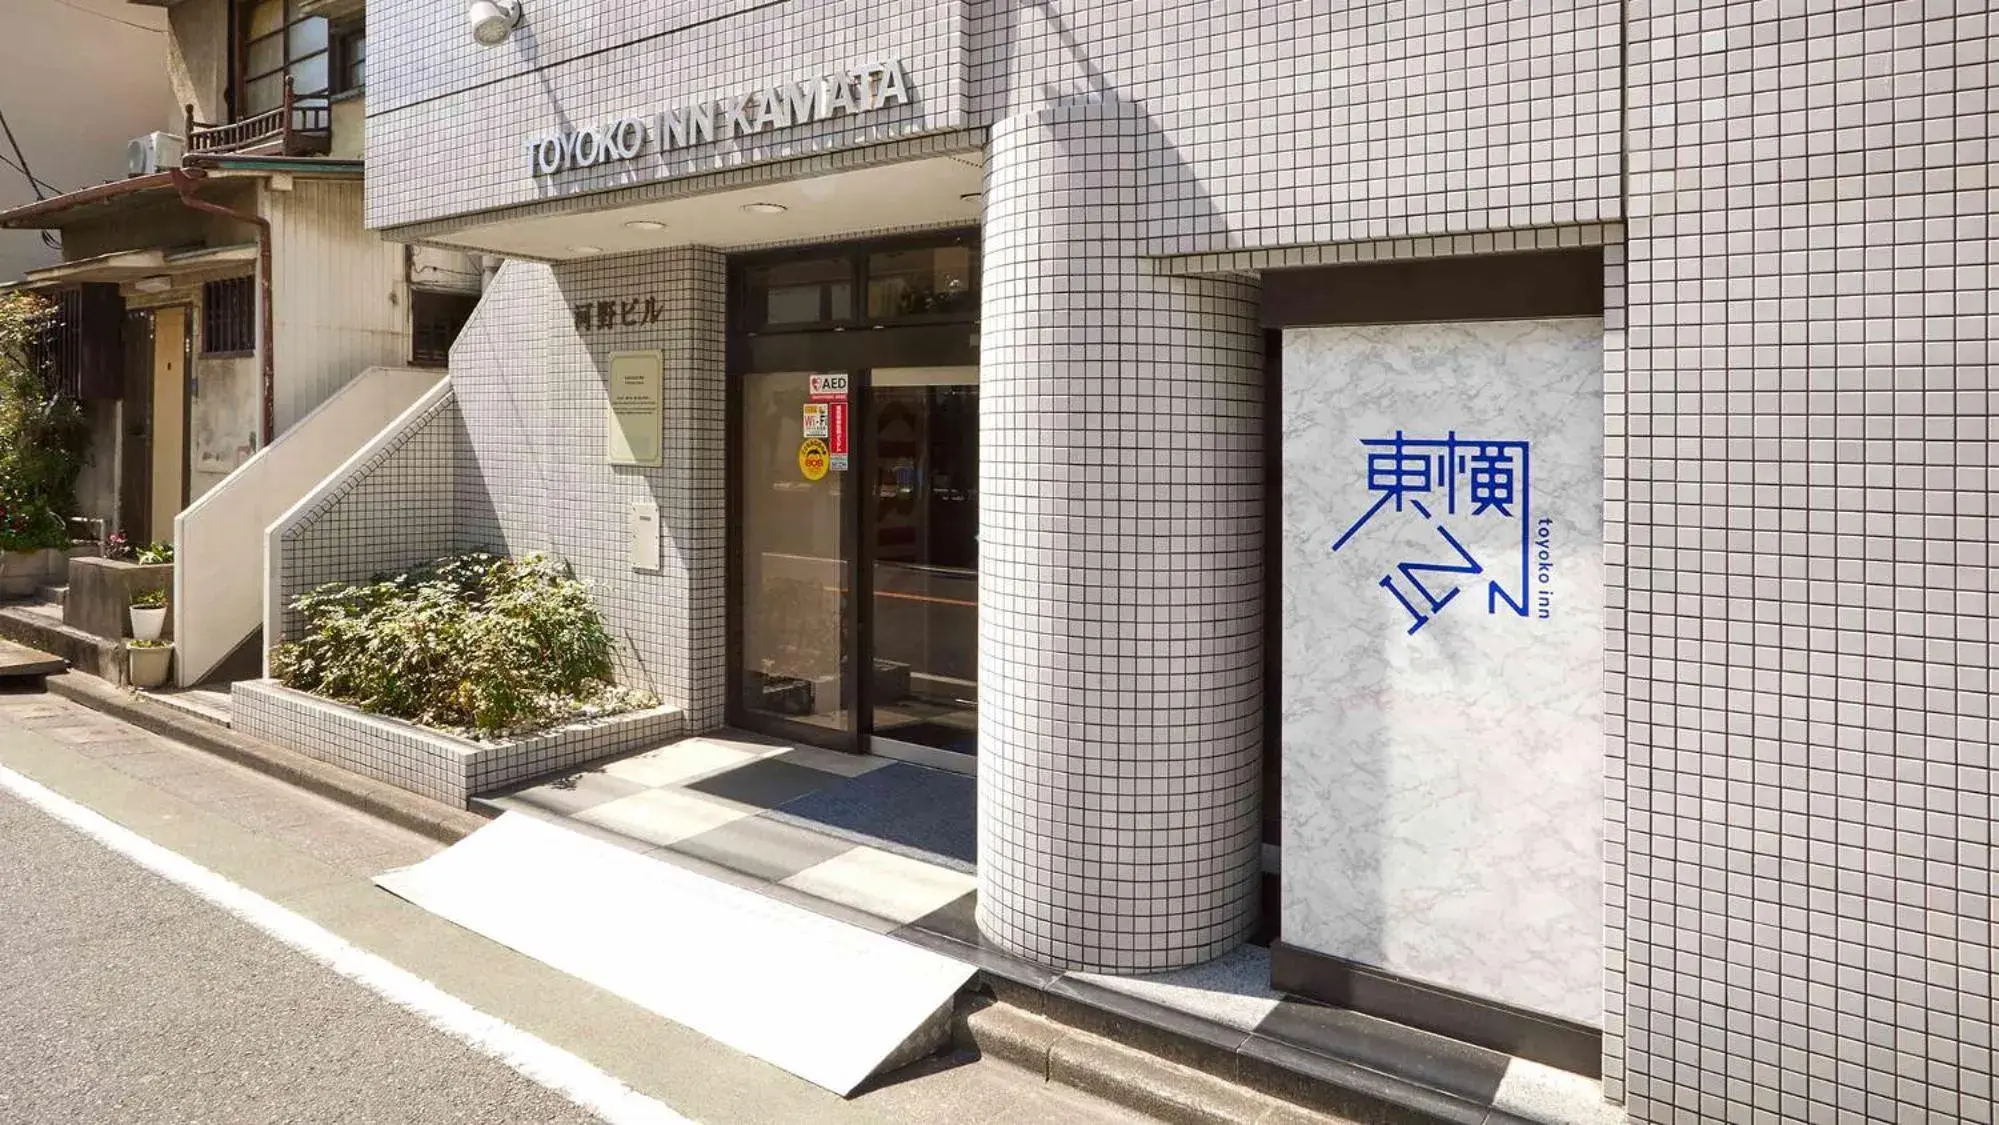 Facade/entrance in Toyoko Inn Tokyo Kamata No.1